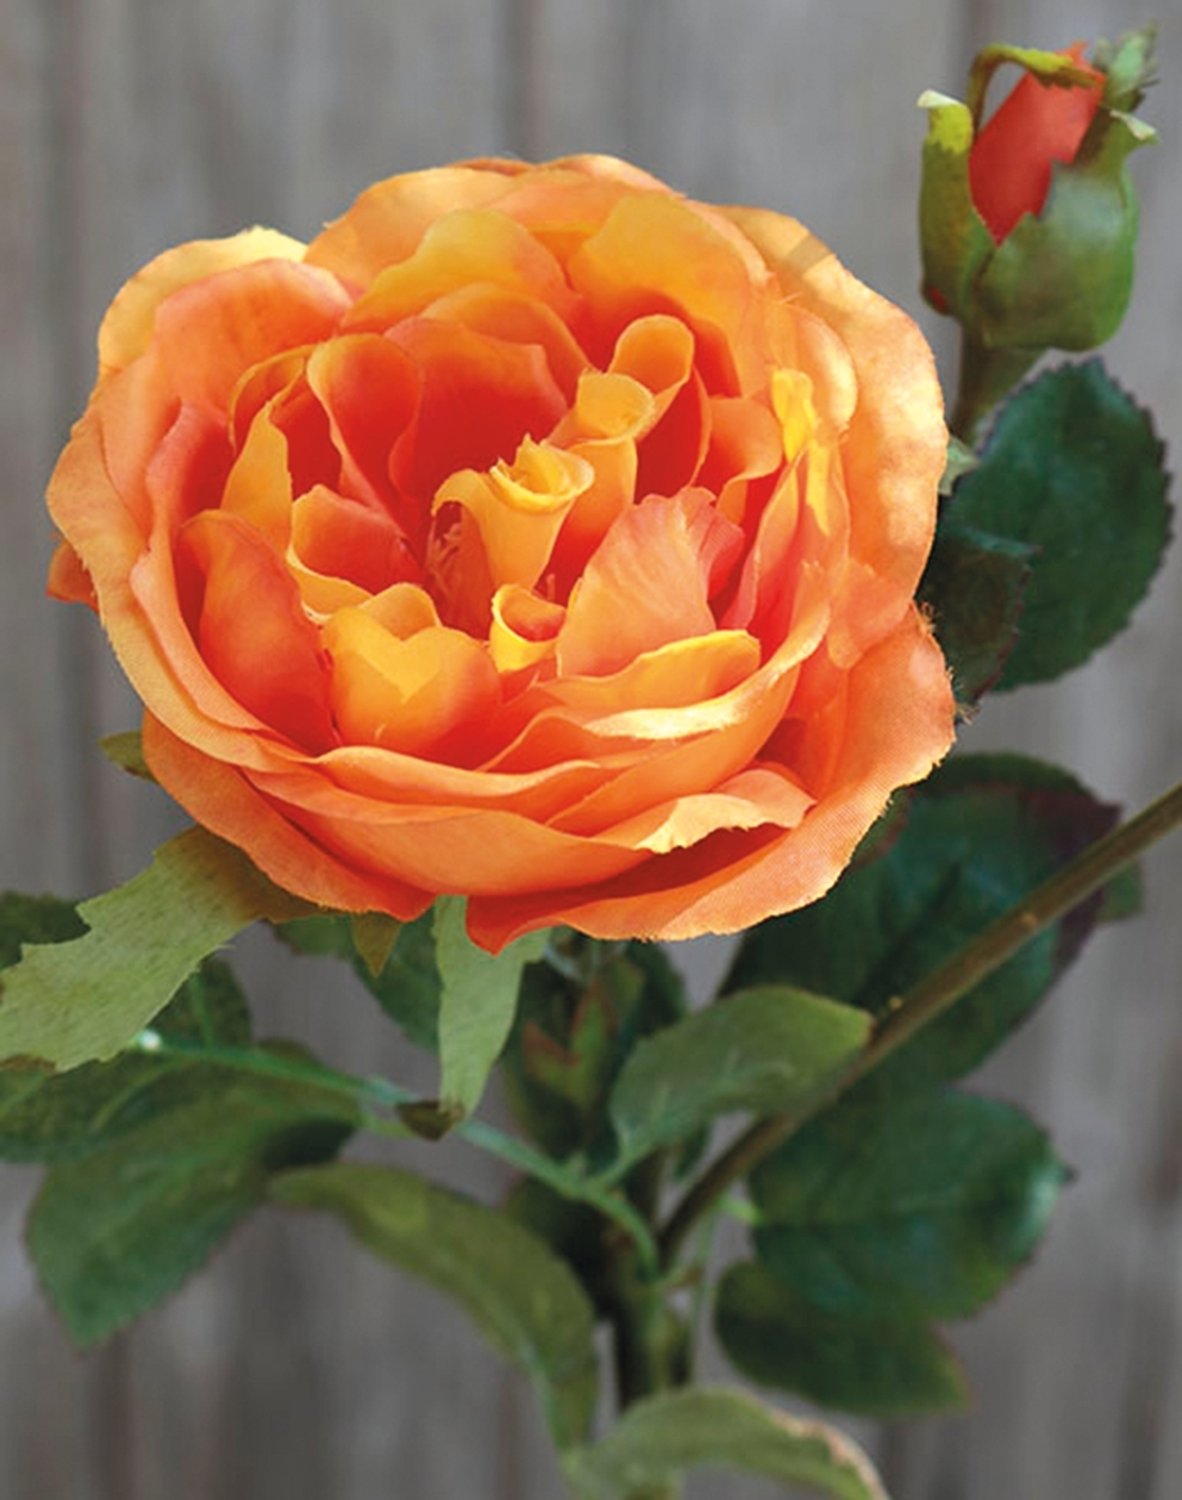 False rose, 1 flower, 2 buds, 30 cm, orange